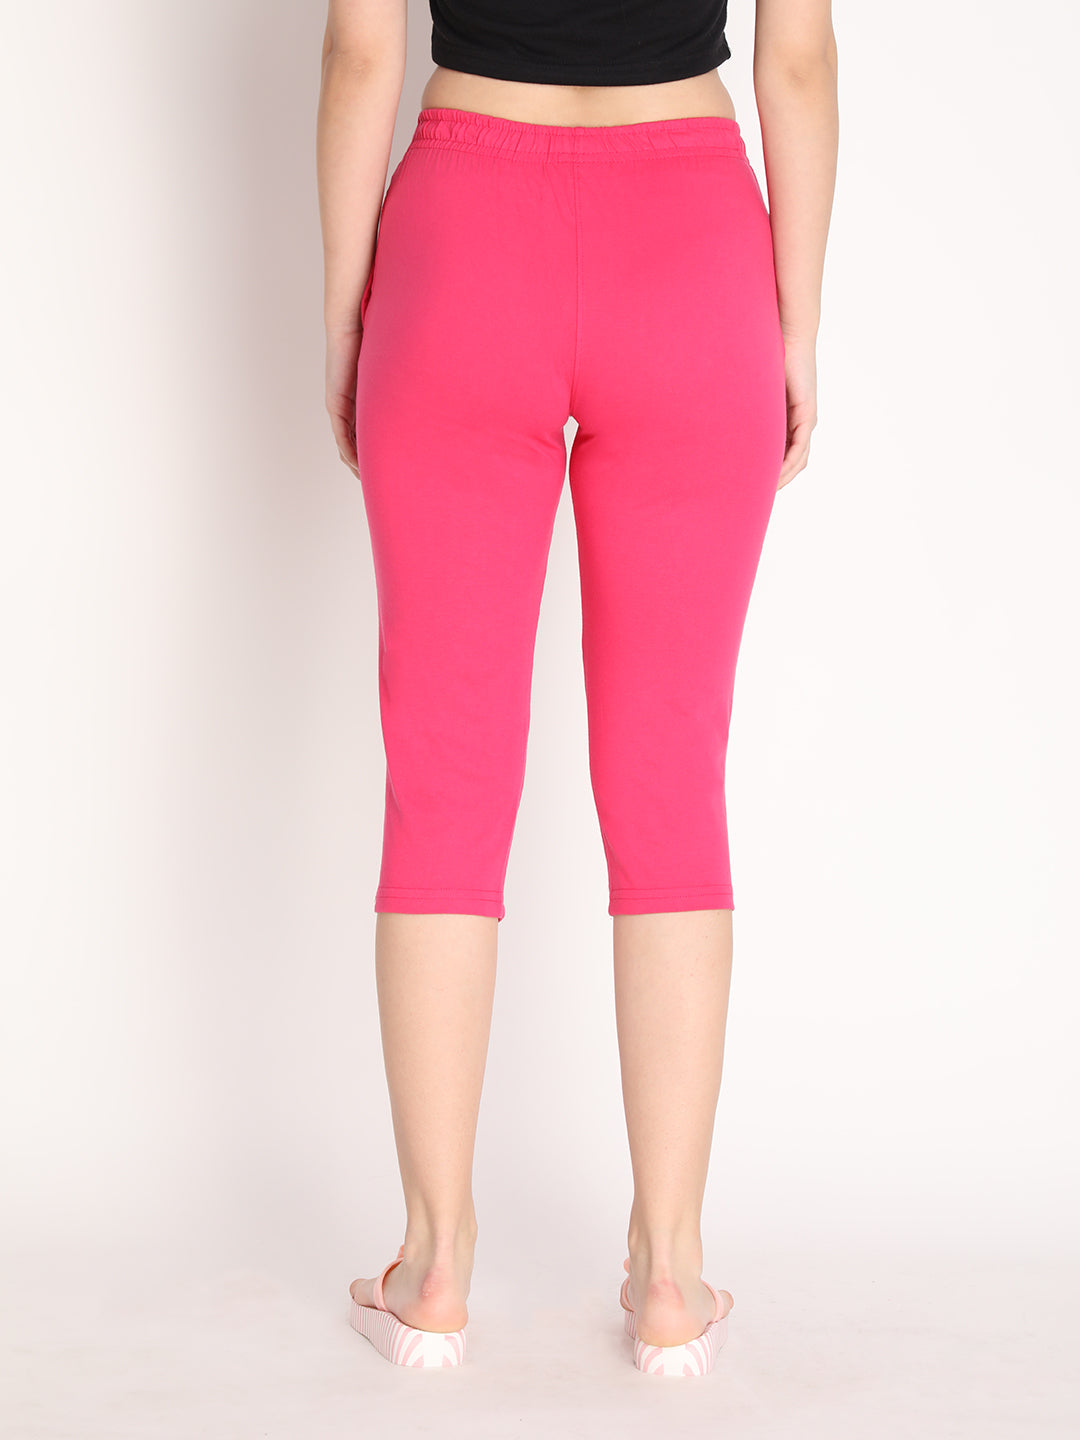 NEVA Women Cotton Capri Pants Hot Pink M